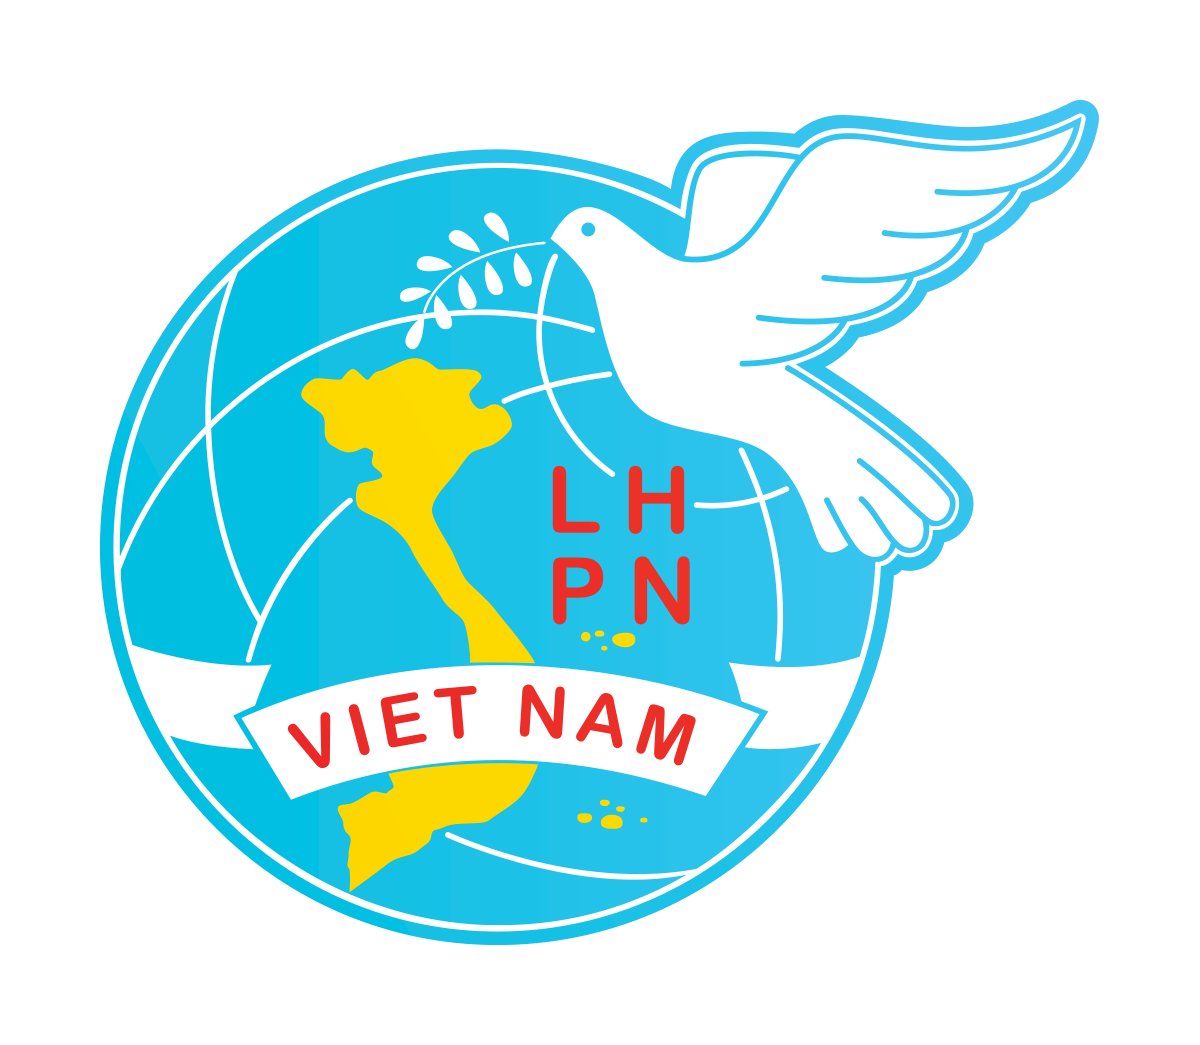 Tải logo hội liên hiệp phụ nữ Việt Nam file vector, CDR, AI, EPS, SVG